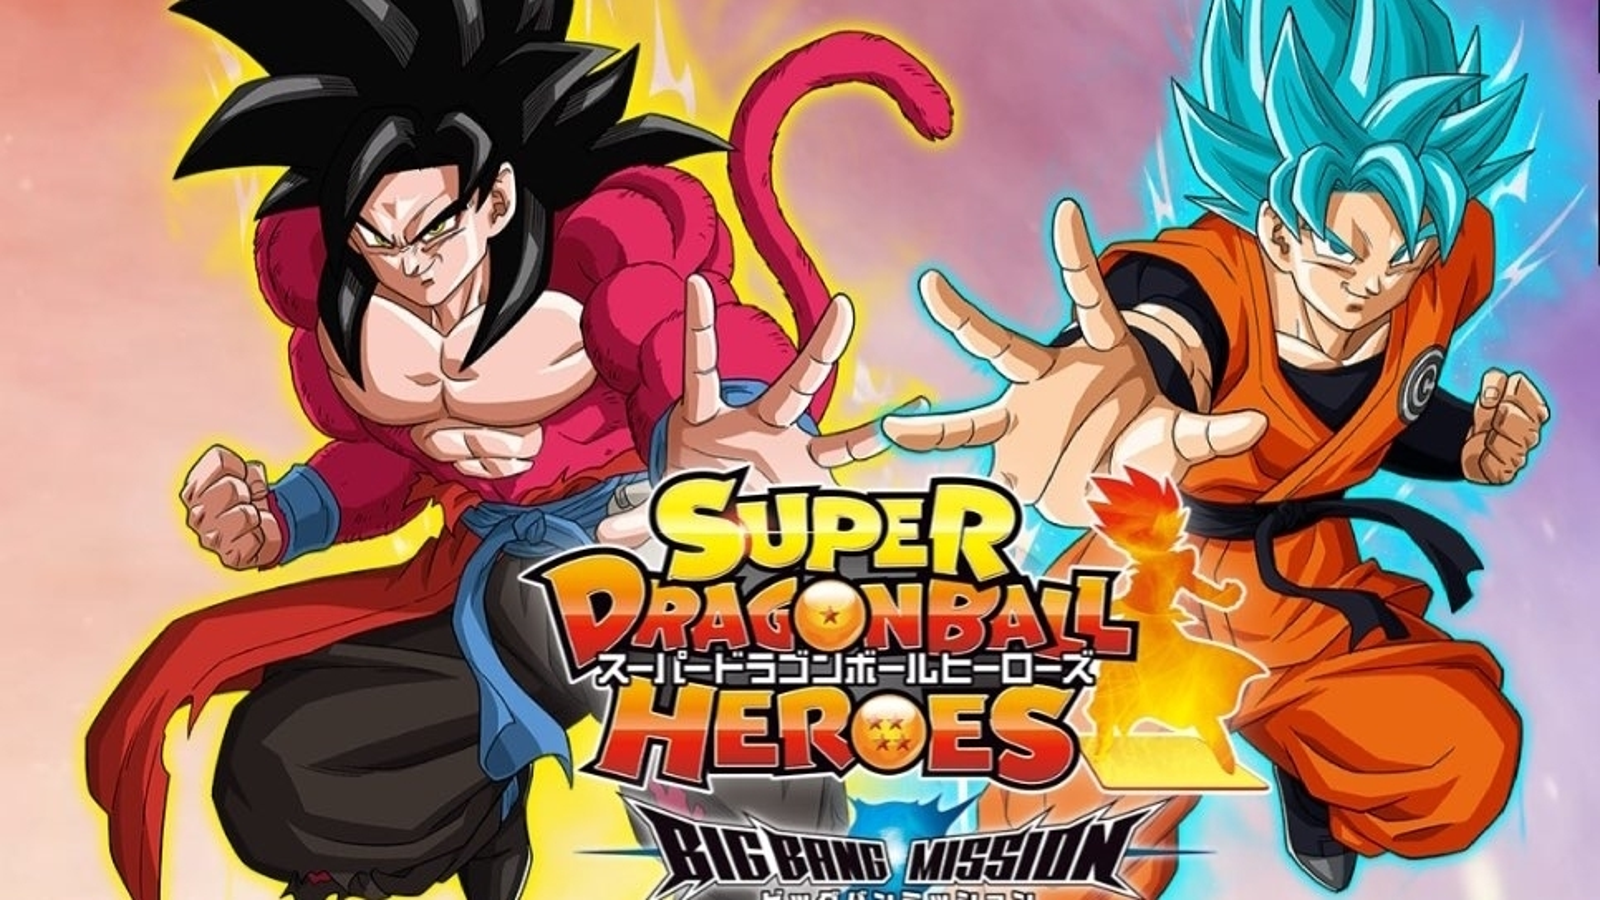 Dragon Ball Super - Novo anime Dragon Ball Heroes pode ser lançado